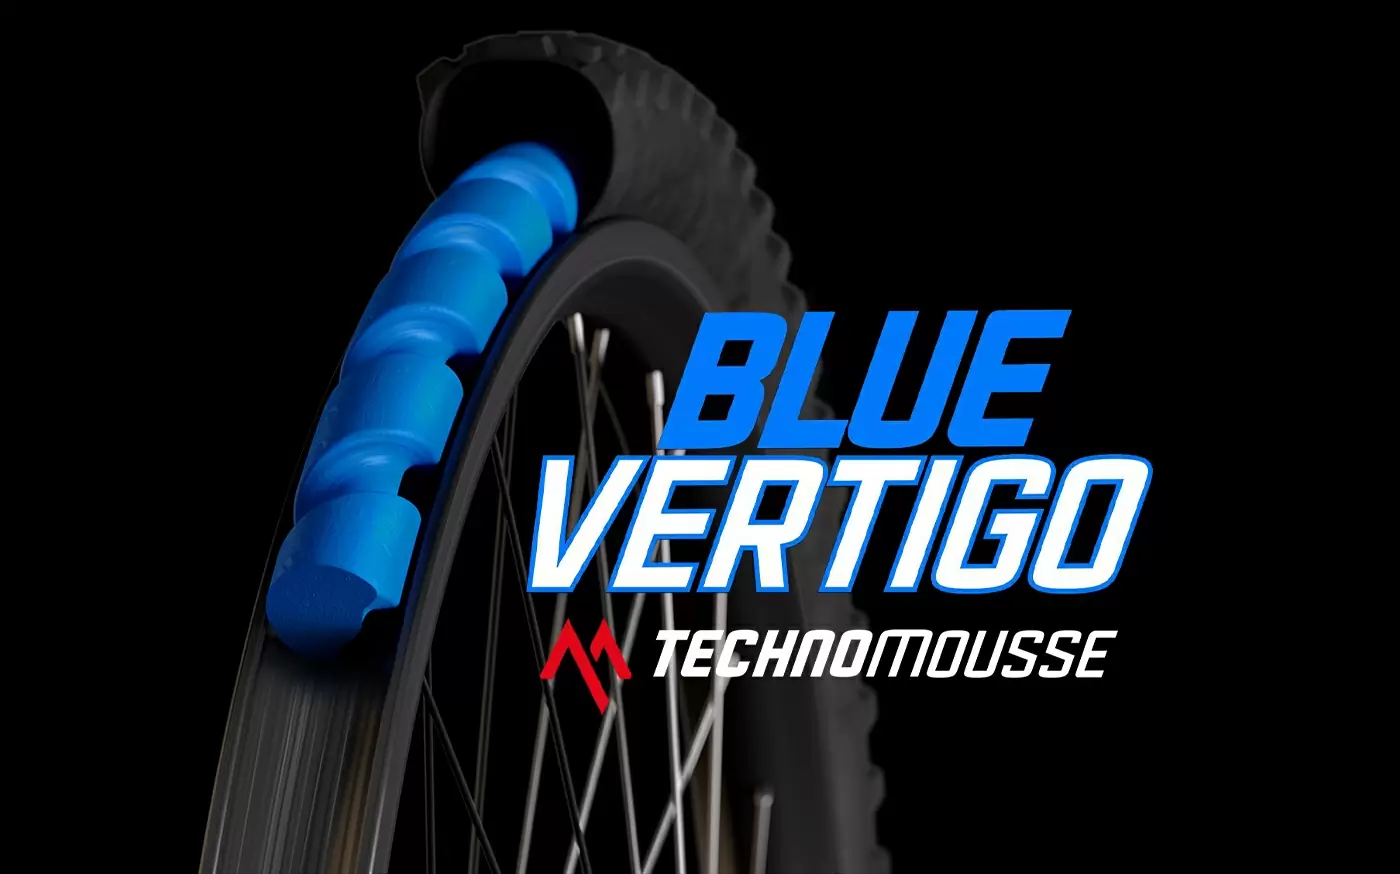 Blue Vertigo - Il nuovo inserto di Technomousse  - image